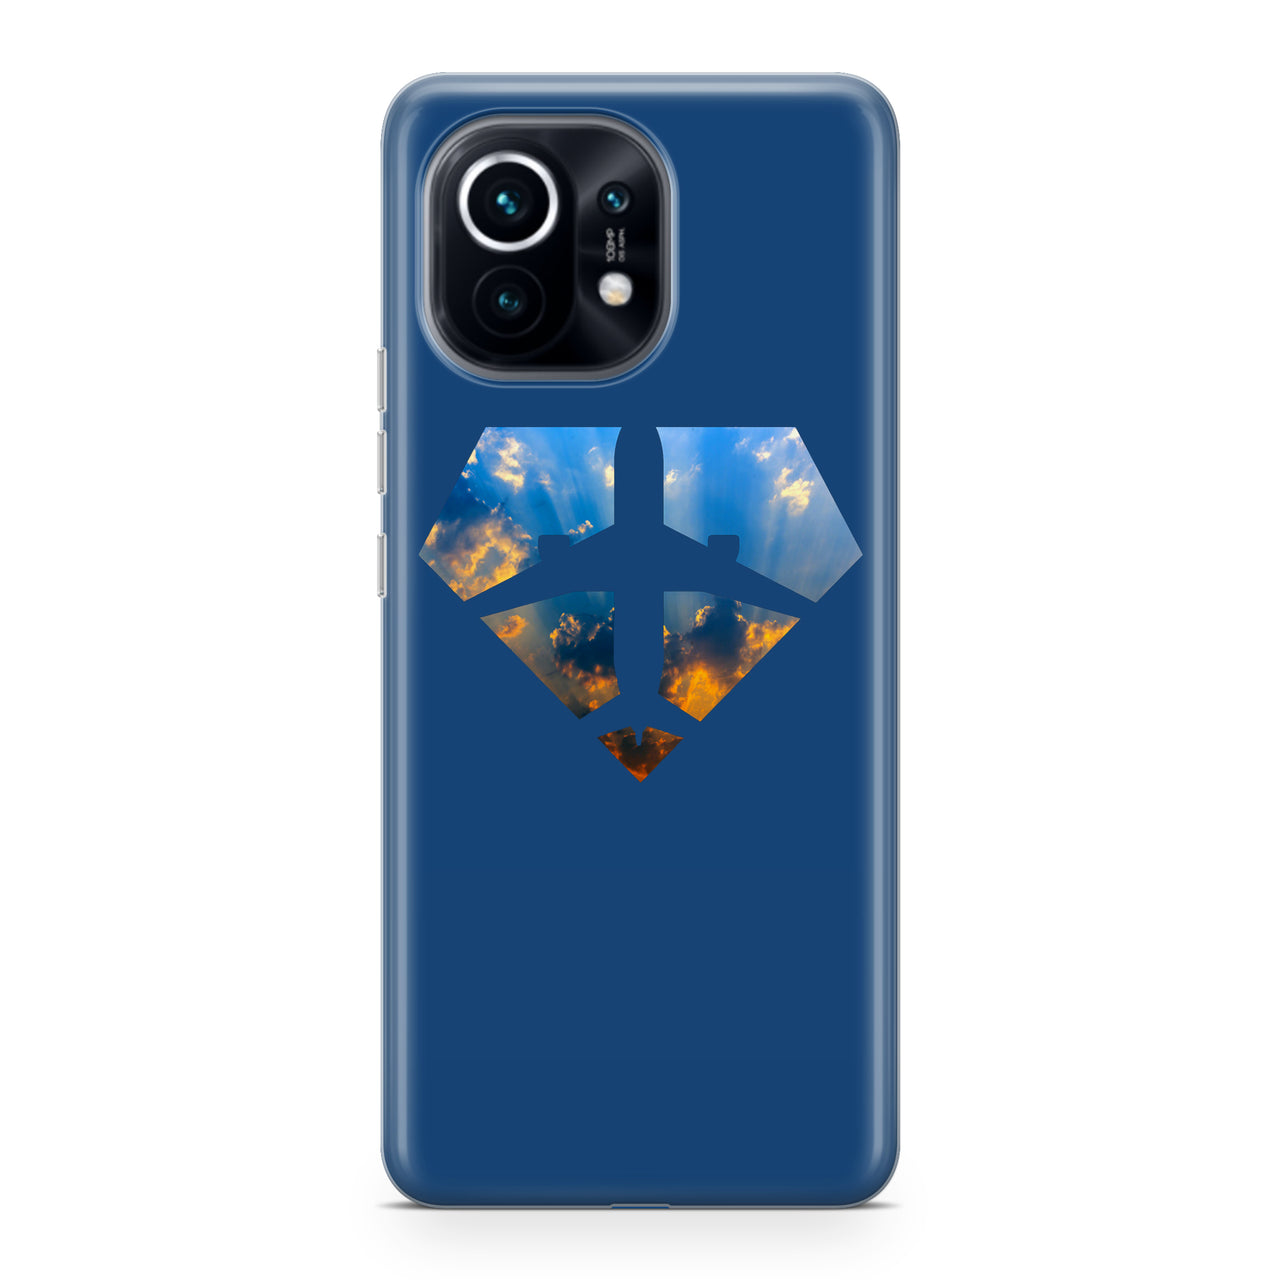 Supermen of The Skies (Sunrise) Designed Xiaomi Cases